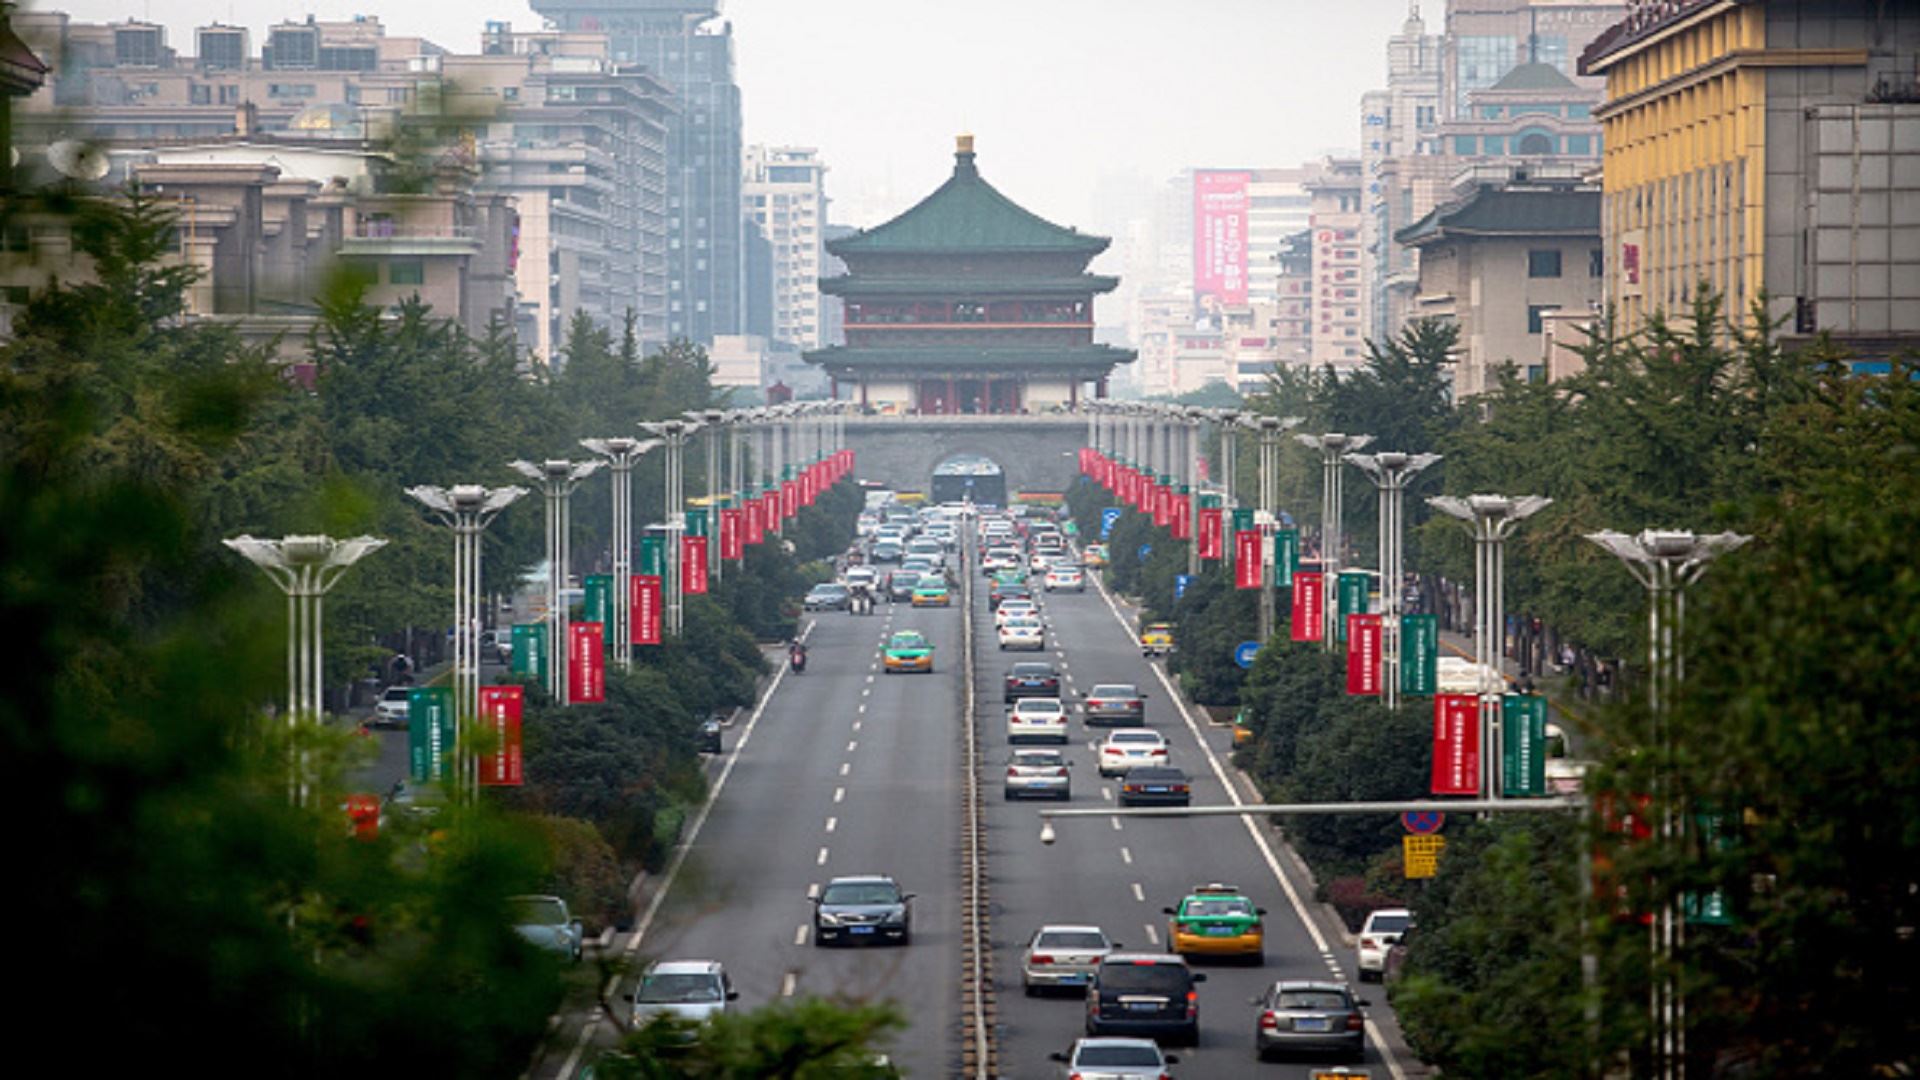 الرئيس الصيني يشيد بـ"مناخ جديد" في هونغ كونغ لدى استقباله زعيمها المقبل